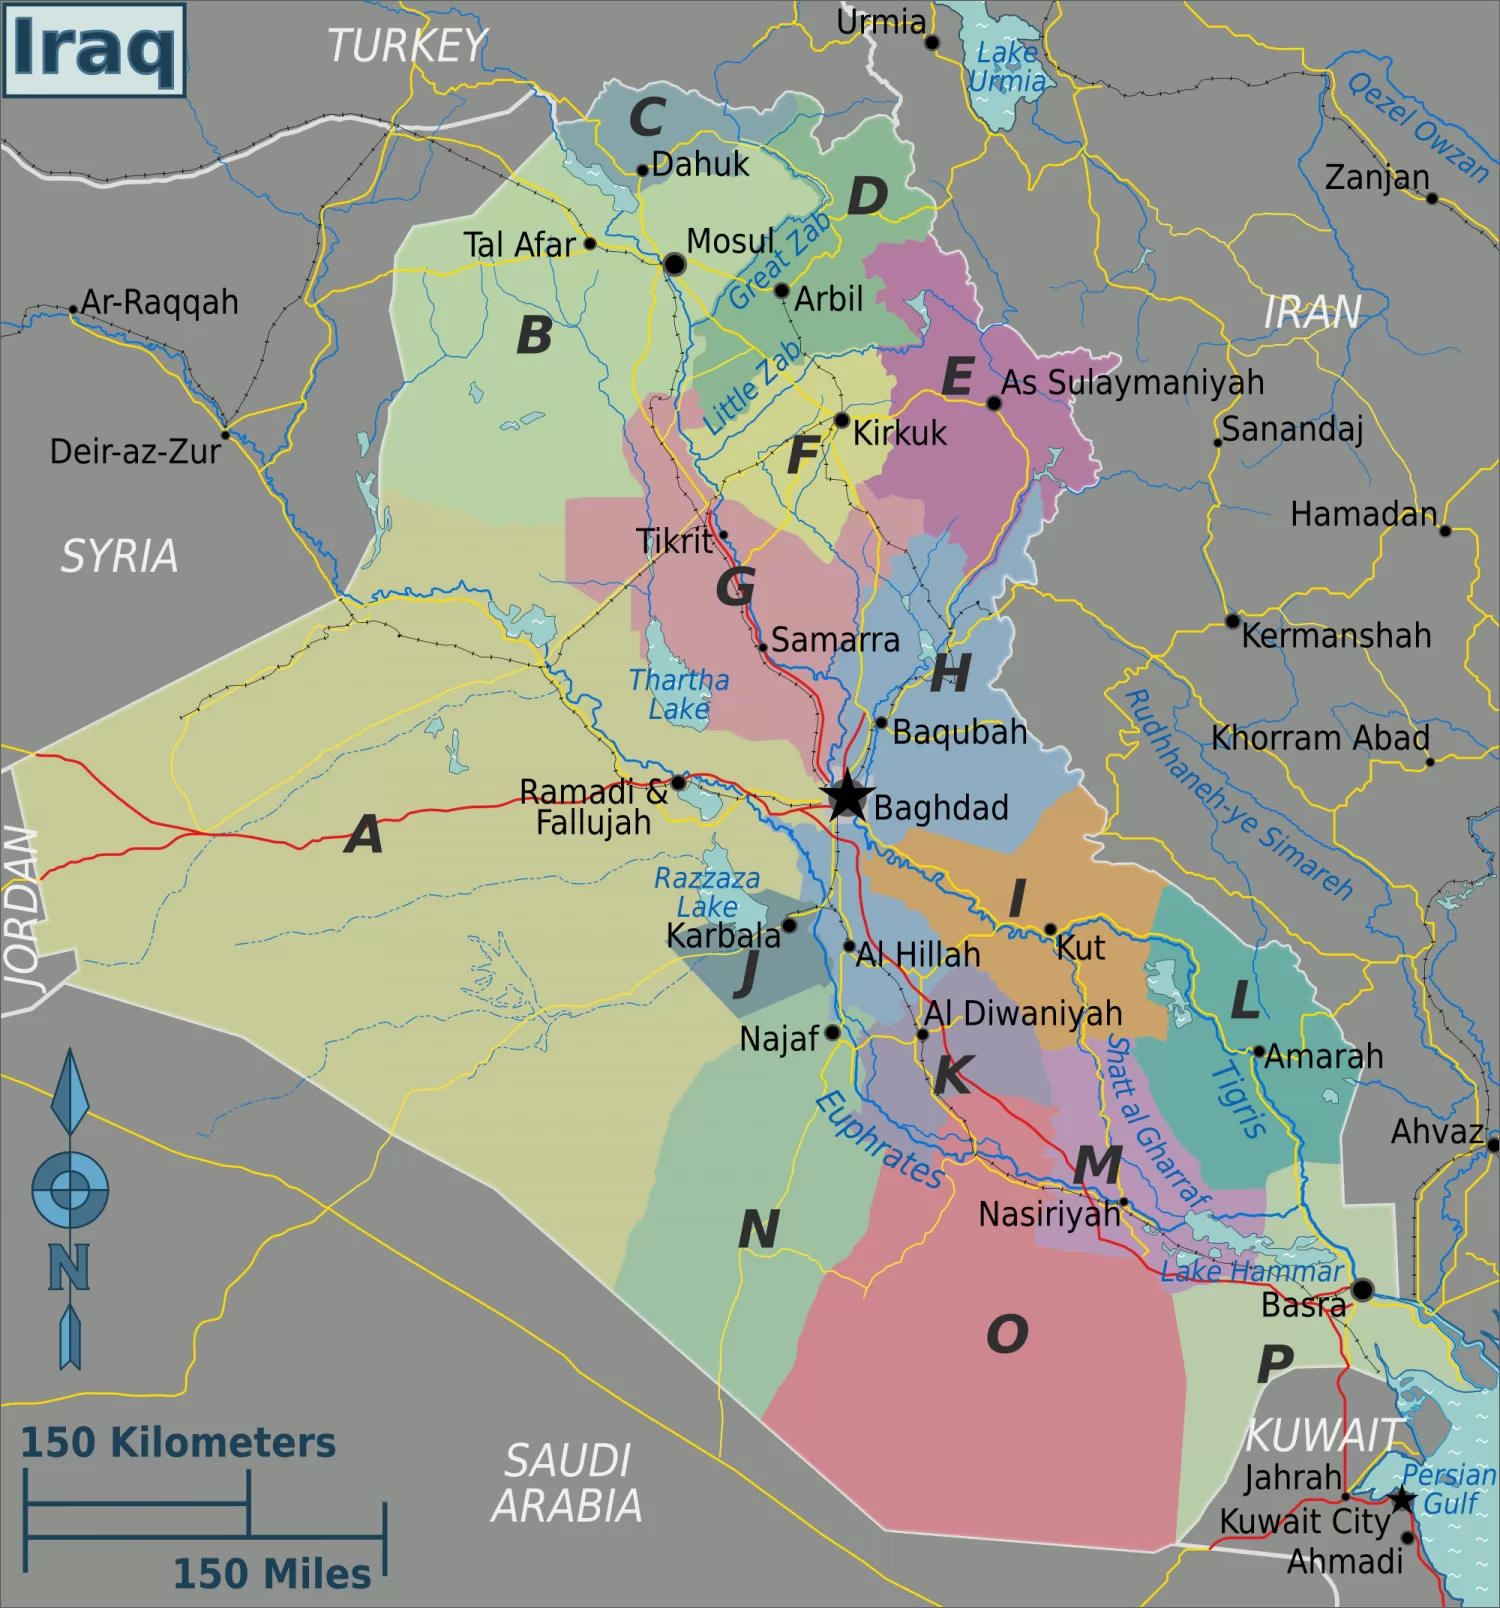 伊拉克地图英文版 - 伊拉克地图 - 地理教师网